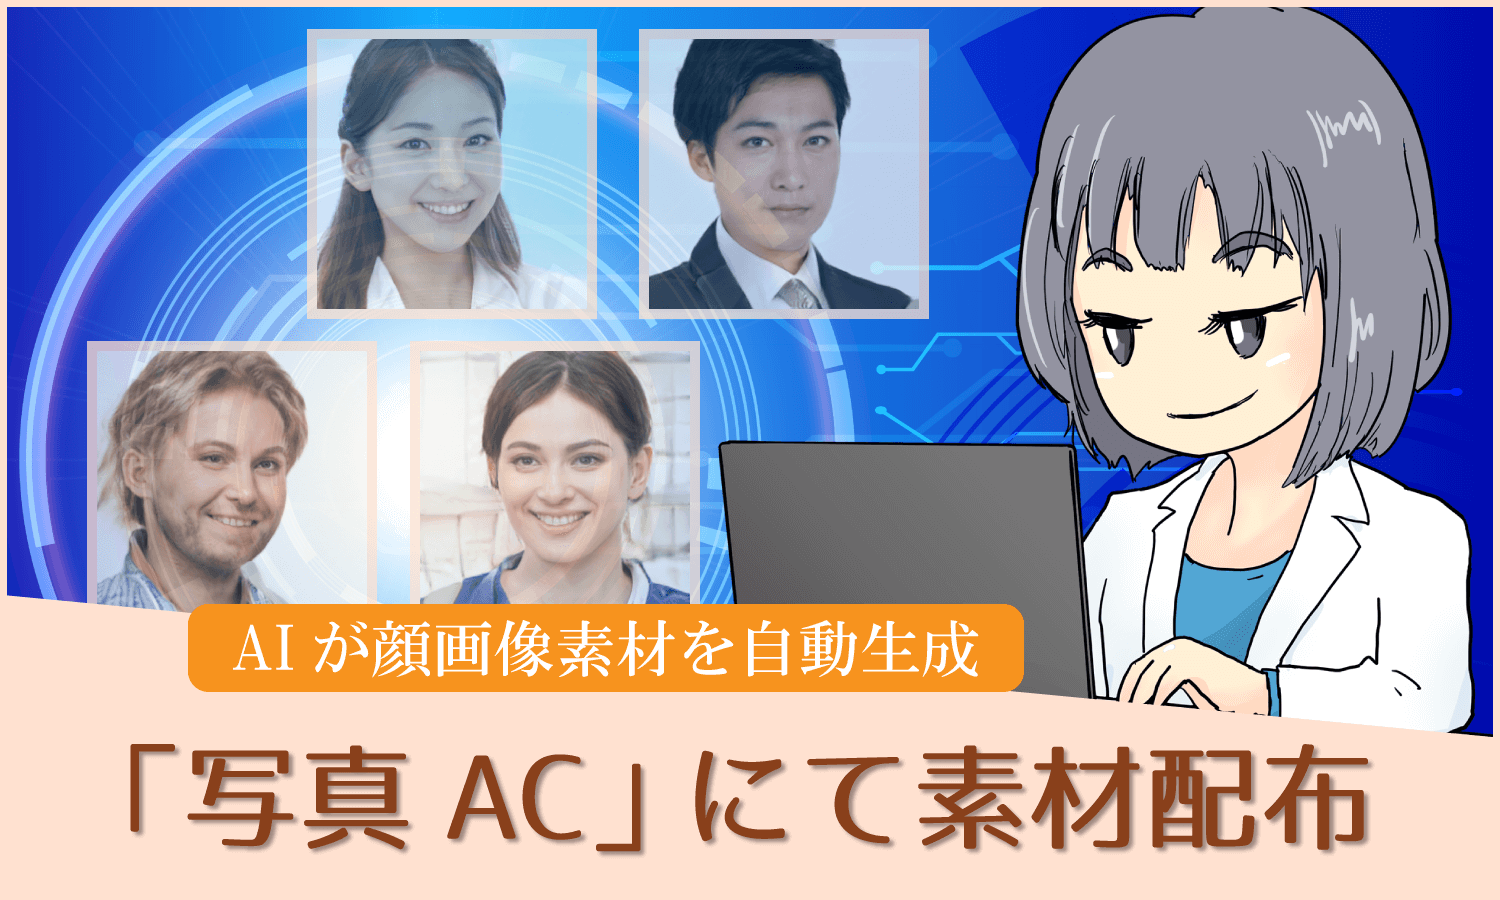 「写真AC」AIが自動生成した顔画像素材の配布開始